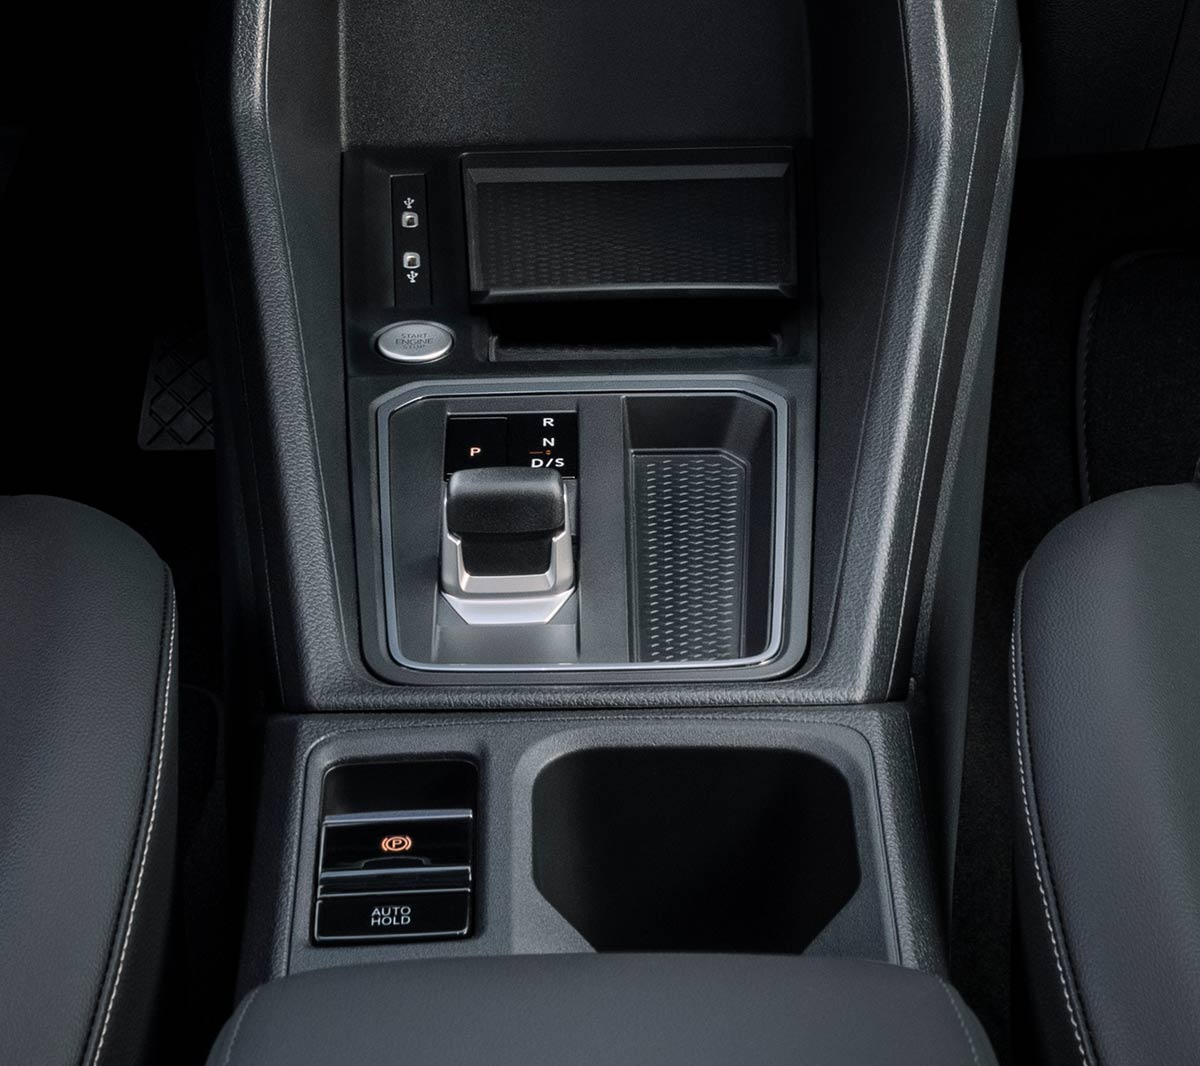 Ford Tourneo Connect Innenraum. Ausschnitt Fahrerkabine mit Mittelkonsole im Detail